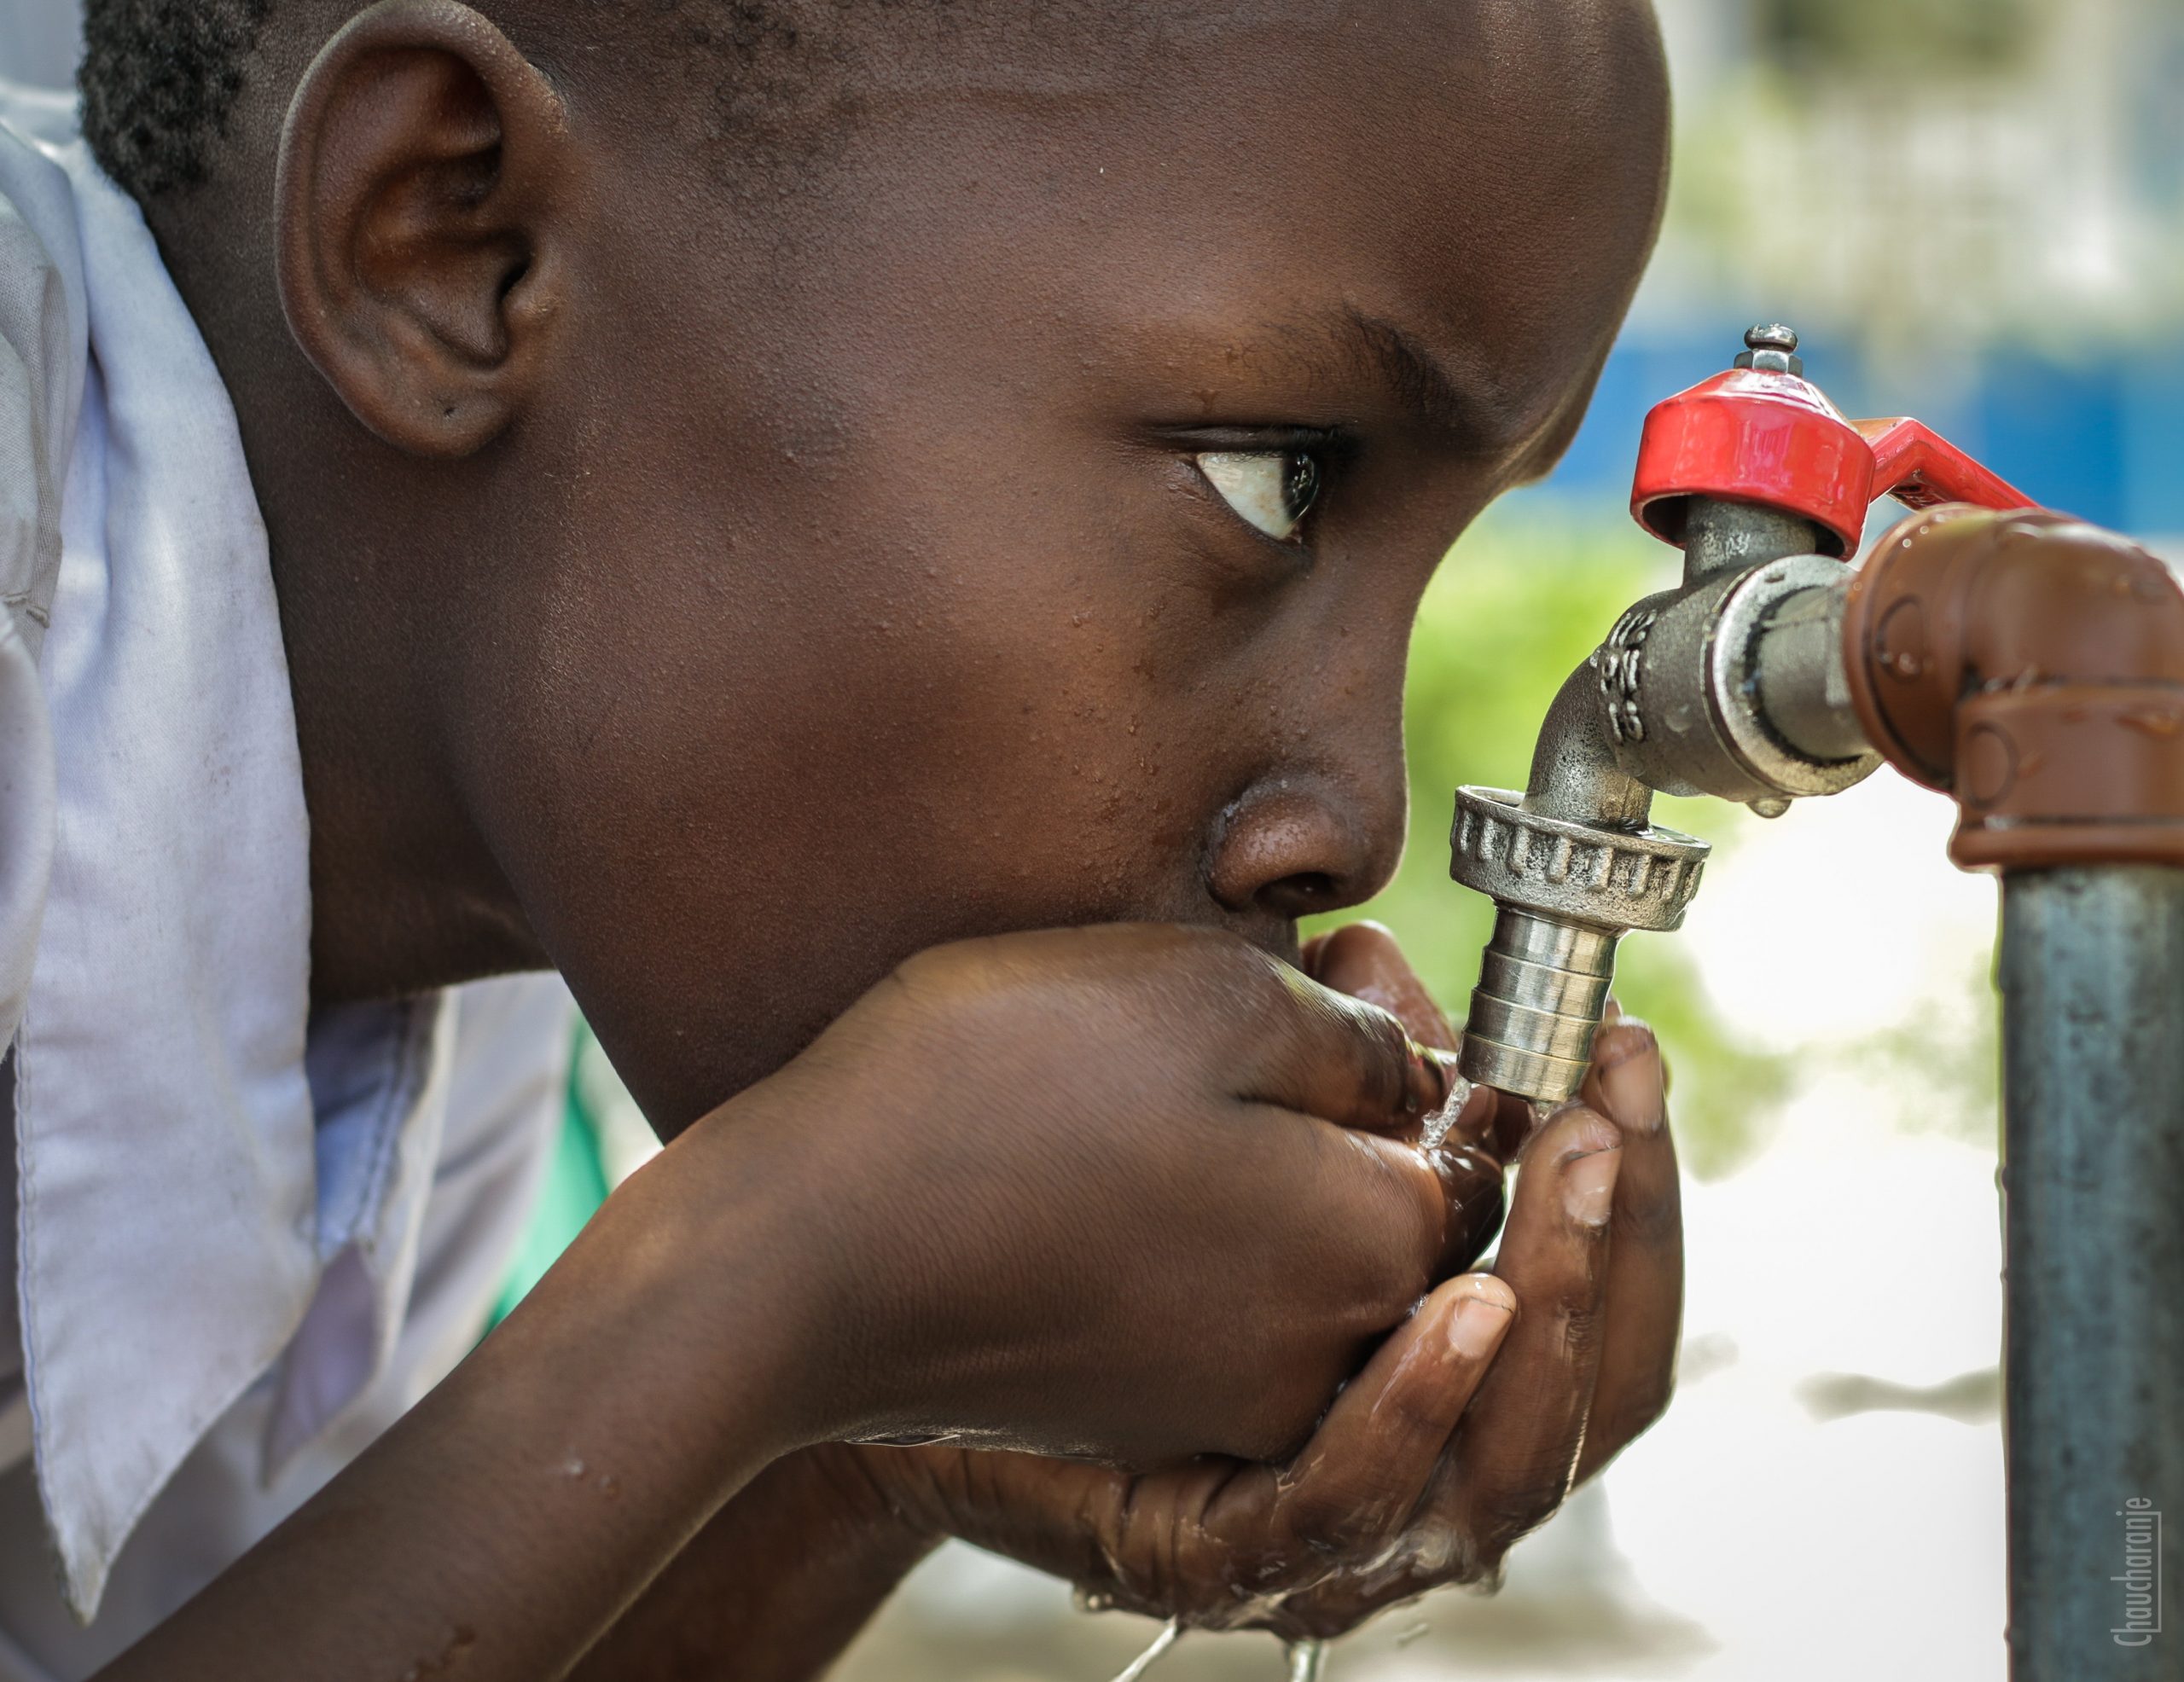 2 mld ludzi ma utrudniony dostęp do wody pitnej. Problem pogłębiają zmiany klimatyczne